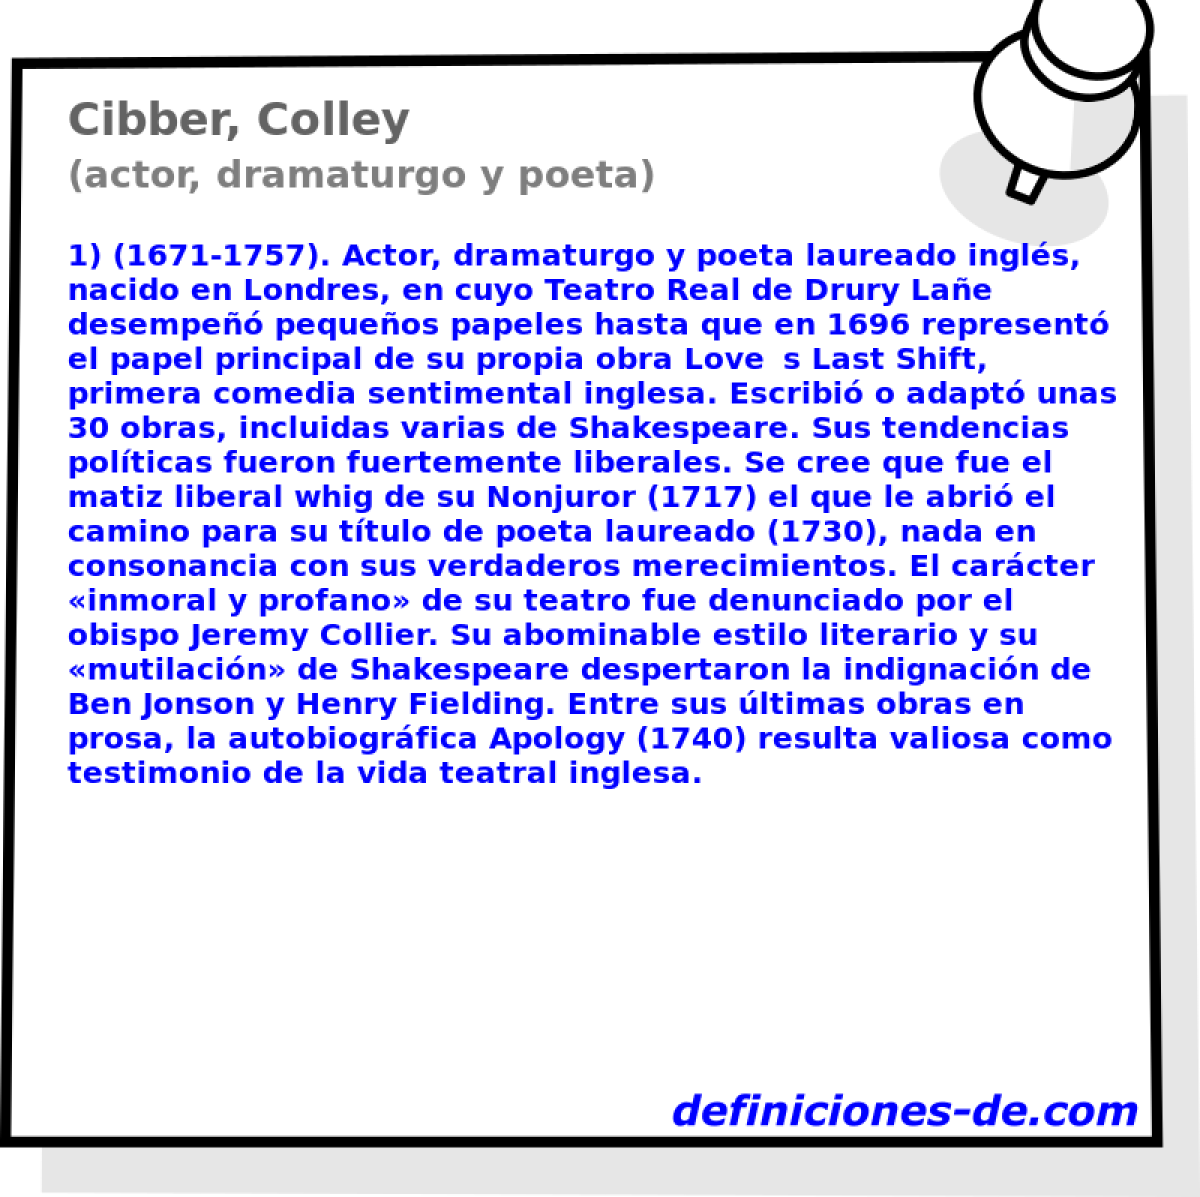 Cibber, Colley (actor, dramaturgo y poeta)